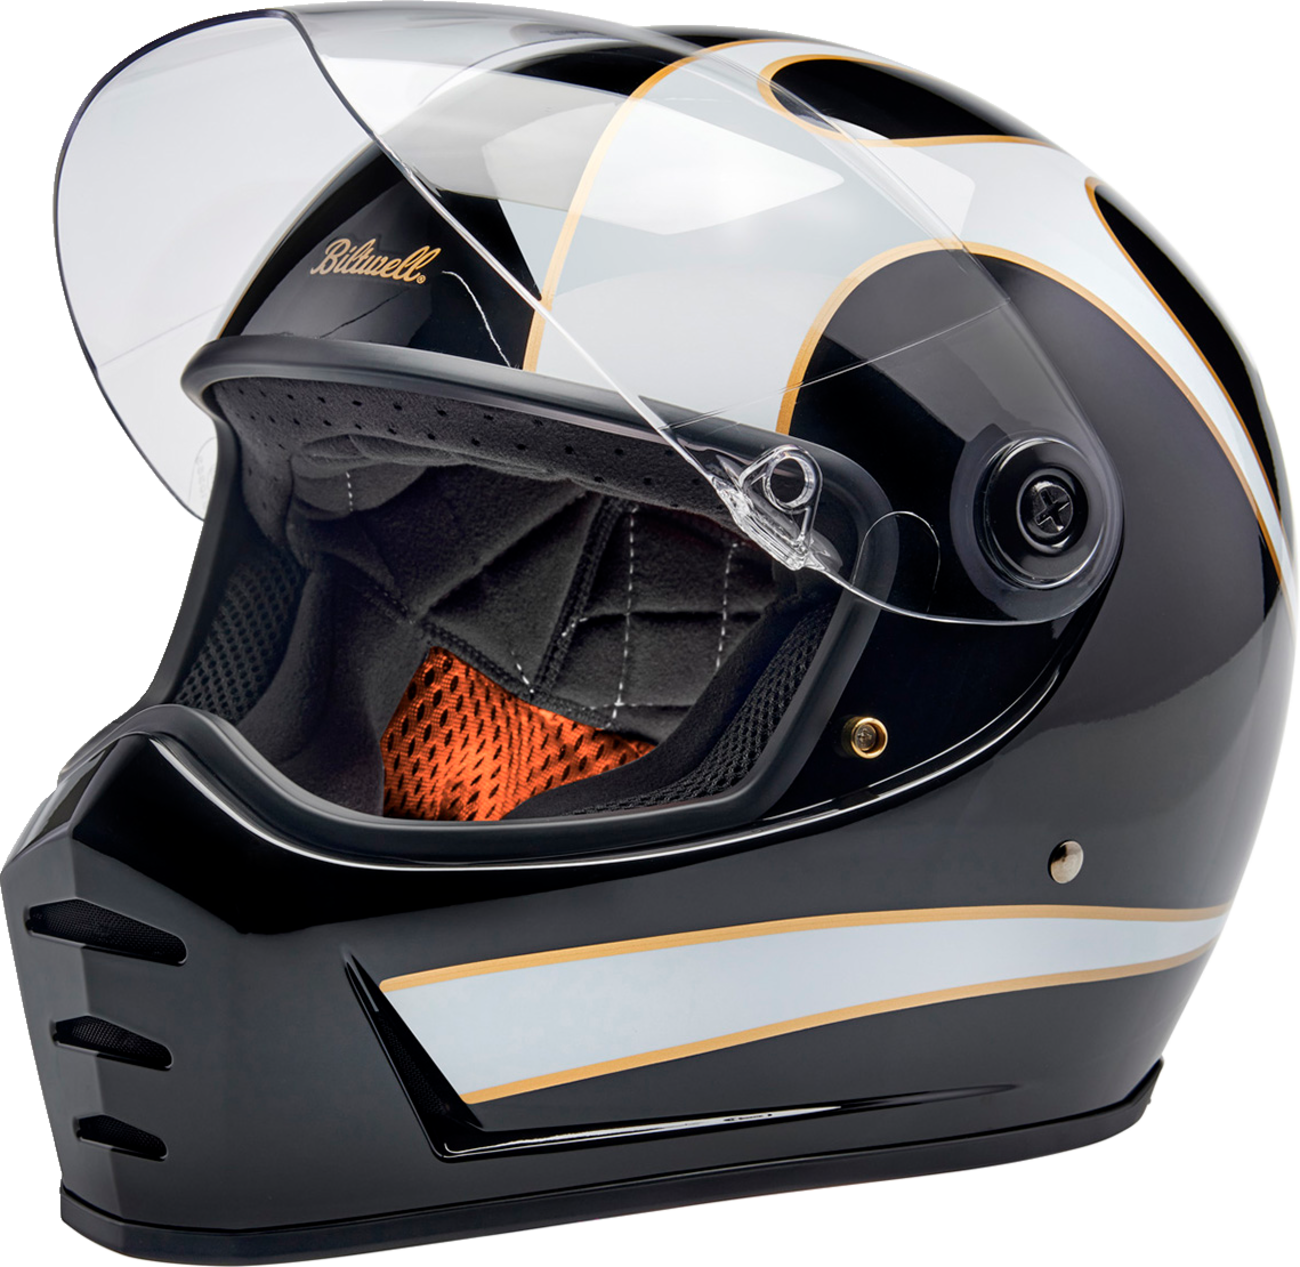 BILTWELL Lane Splitter Helmet - Gloss Black/White Flames - 2XL 1004-570-506